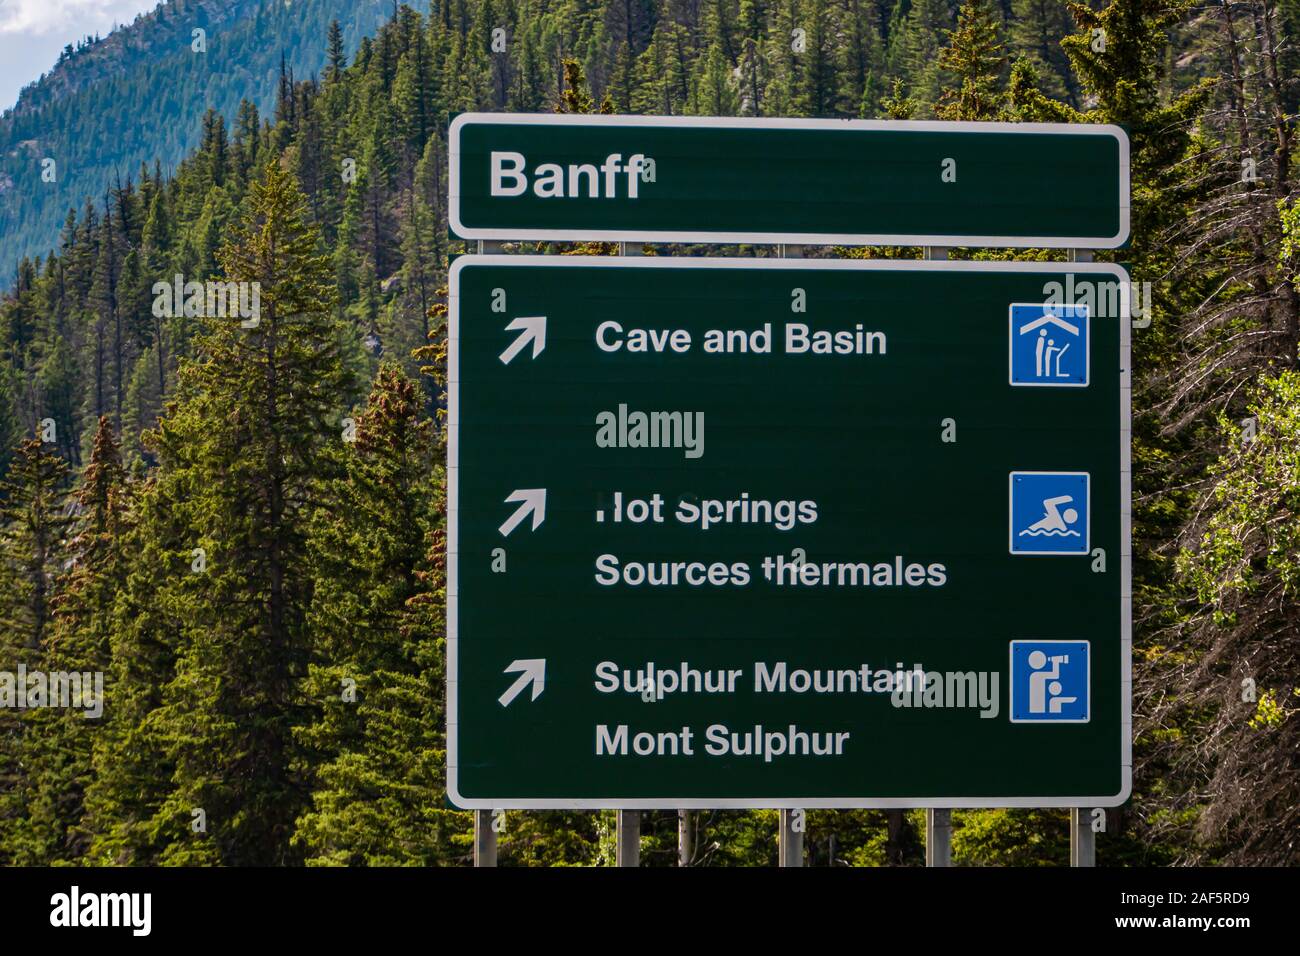 Canadian dos idiomas Inglés y Francés Información road señales verdes, Banff Town, la cueva y la cuenca, aguas termales, la montaña Sulphur, Alberta, Canadá Foto de stock